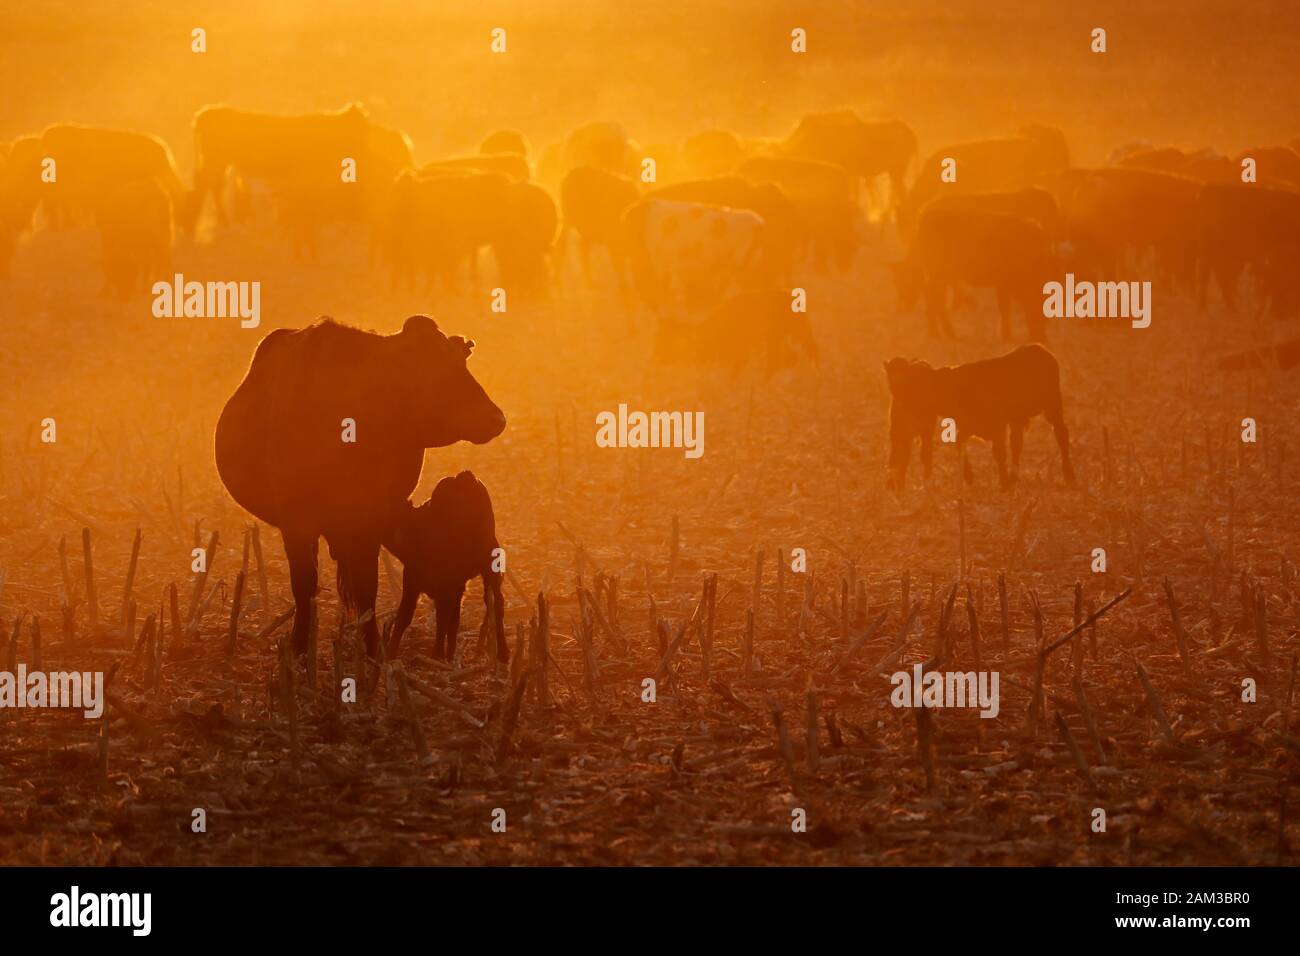 Free-range les bovins, y compris les vaches et les veaux, l'alimentation sur terrain poussiéreux au coucher du soleil, l'Afrique du Sud Banque D'Images